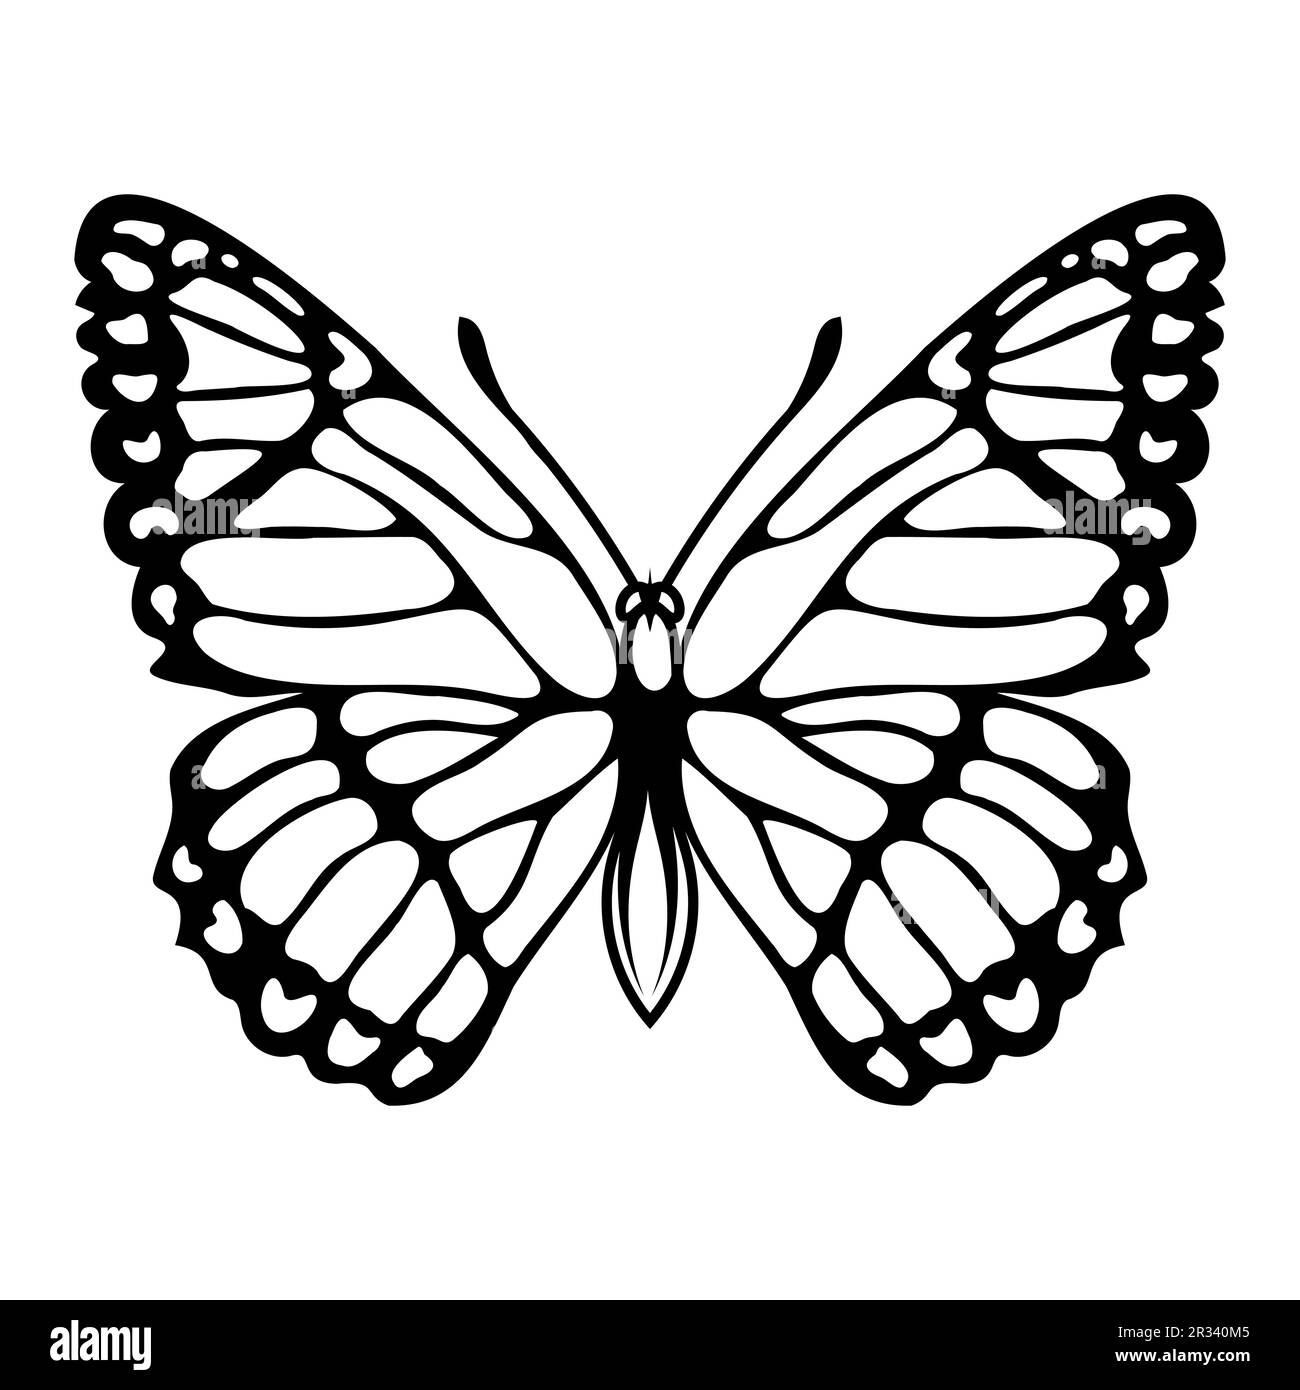 Schmetterling. Vektordarstellung eines skizzierten Nektar-fütternden Insekts. Wunderschöne Flügel, die mit mikroskopischen Skalen bedeckt sind. Stock Vektor